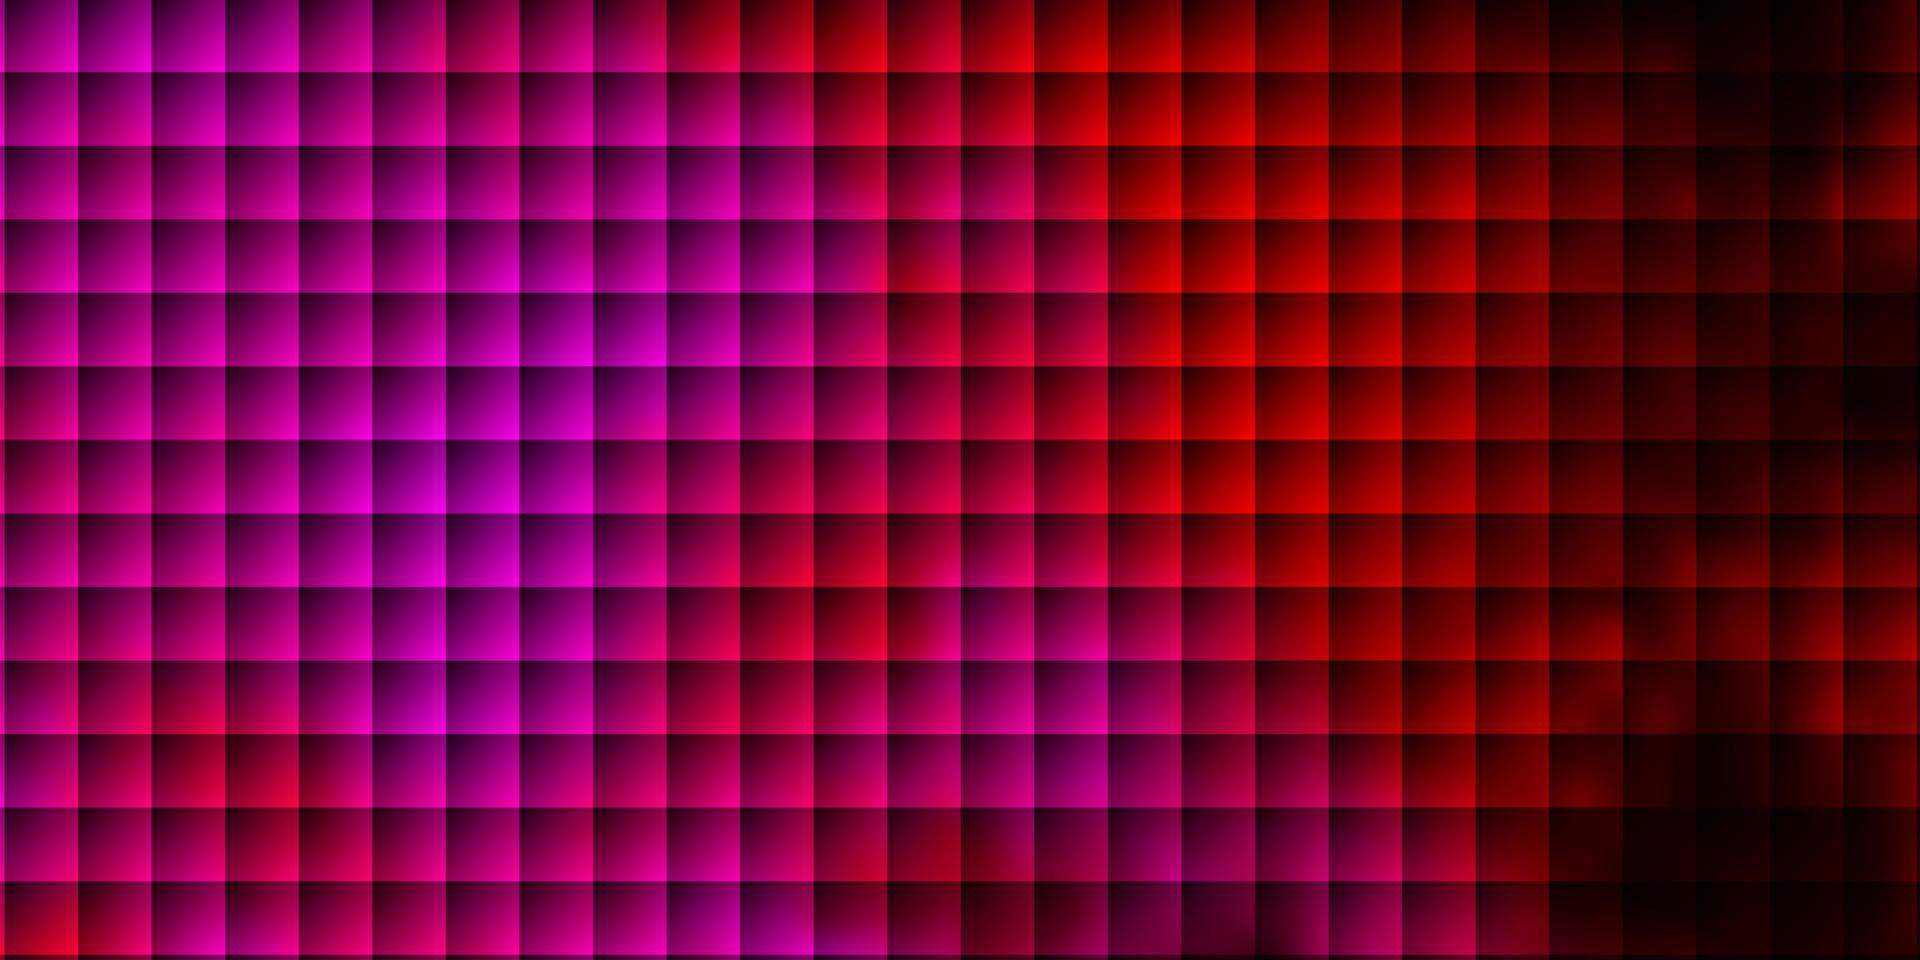 mörk lila, rosa vektor layout med linjer, rektanglar.